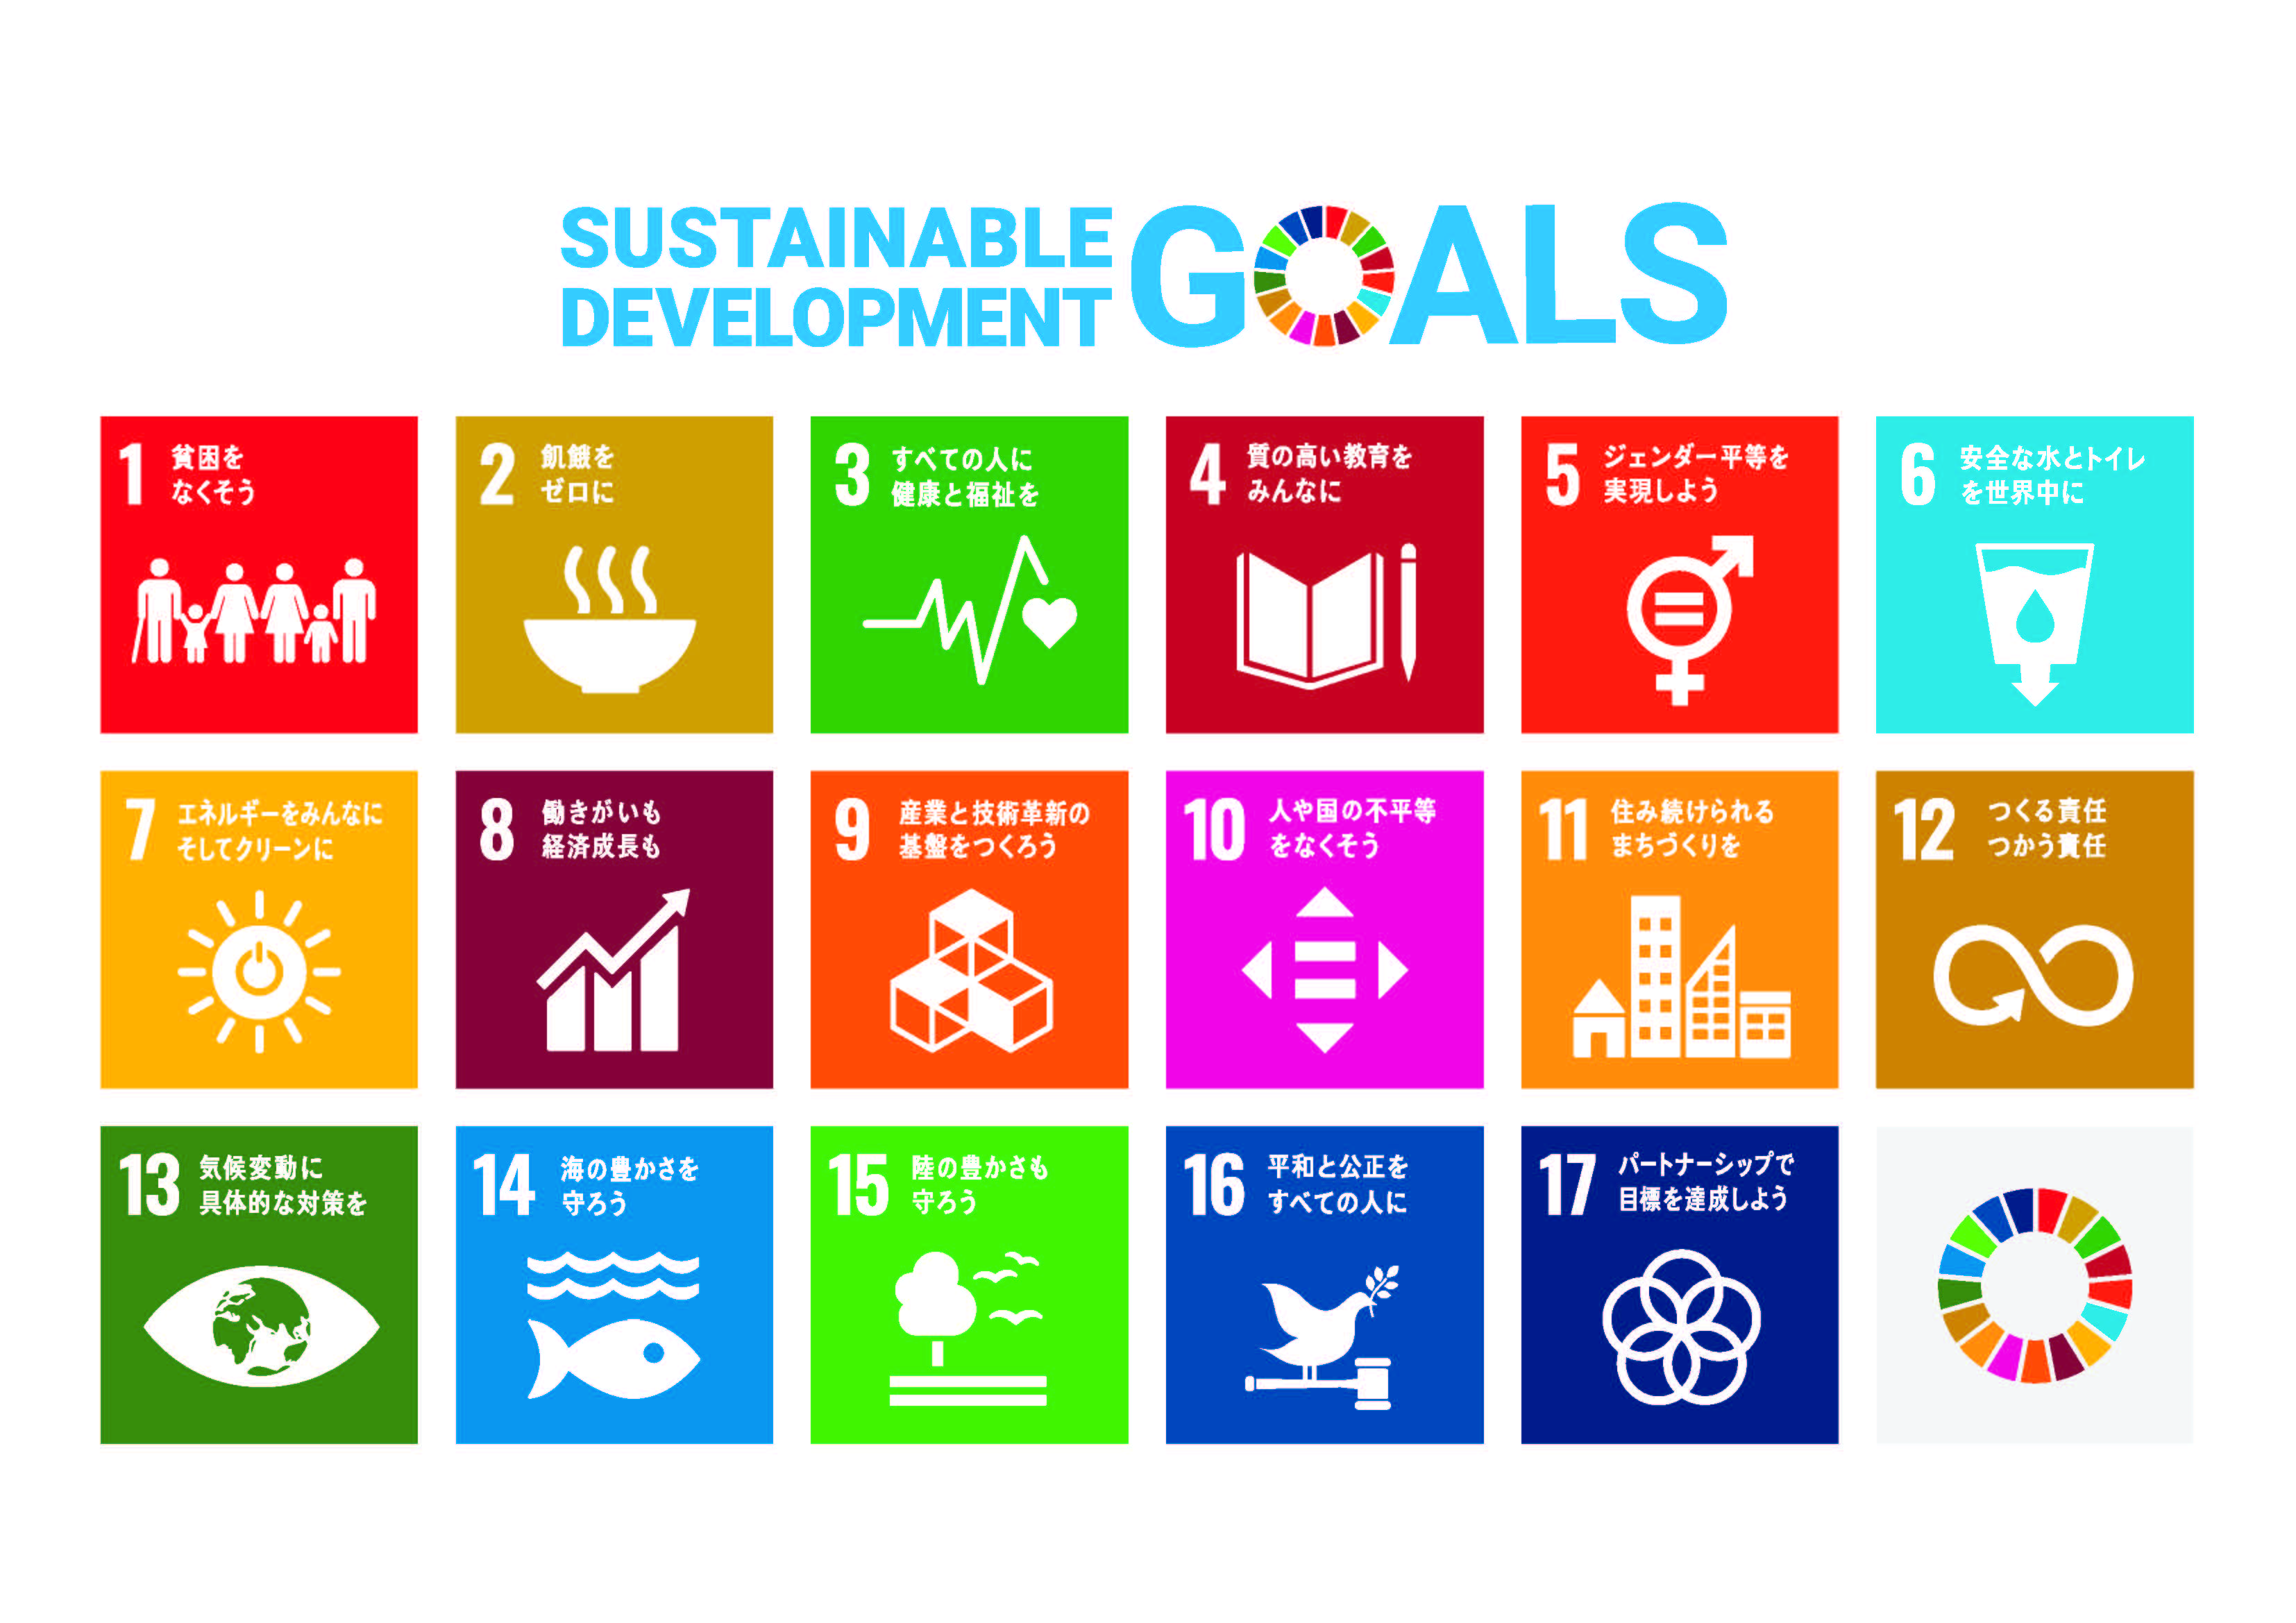 SDGs17の目標　貧困をなくそう、飢餓をゼロに、すべての人に健康と福祉を、質の高い教育をみんなに、ジェンダー平等を実現しよう、安全な水とトイレを世界中に、エネルギーをみんなにそしてクリーンに、働きがいも経済成長も、産業と技術革新の基盤をつくろう、人や国の不平等をなくそう、住み続けられるまちづくりを、つくる責任つかう責任、気候変動に具体的な対策を、海の豊かさを守ろう、陸の豊かさも守ろう、平和と公正をすべての人に、パートナーシップで目標を達成しよう